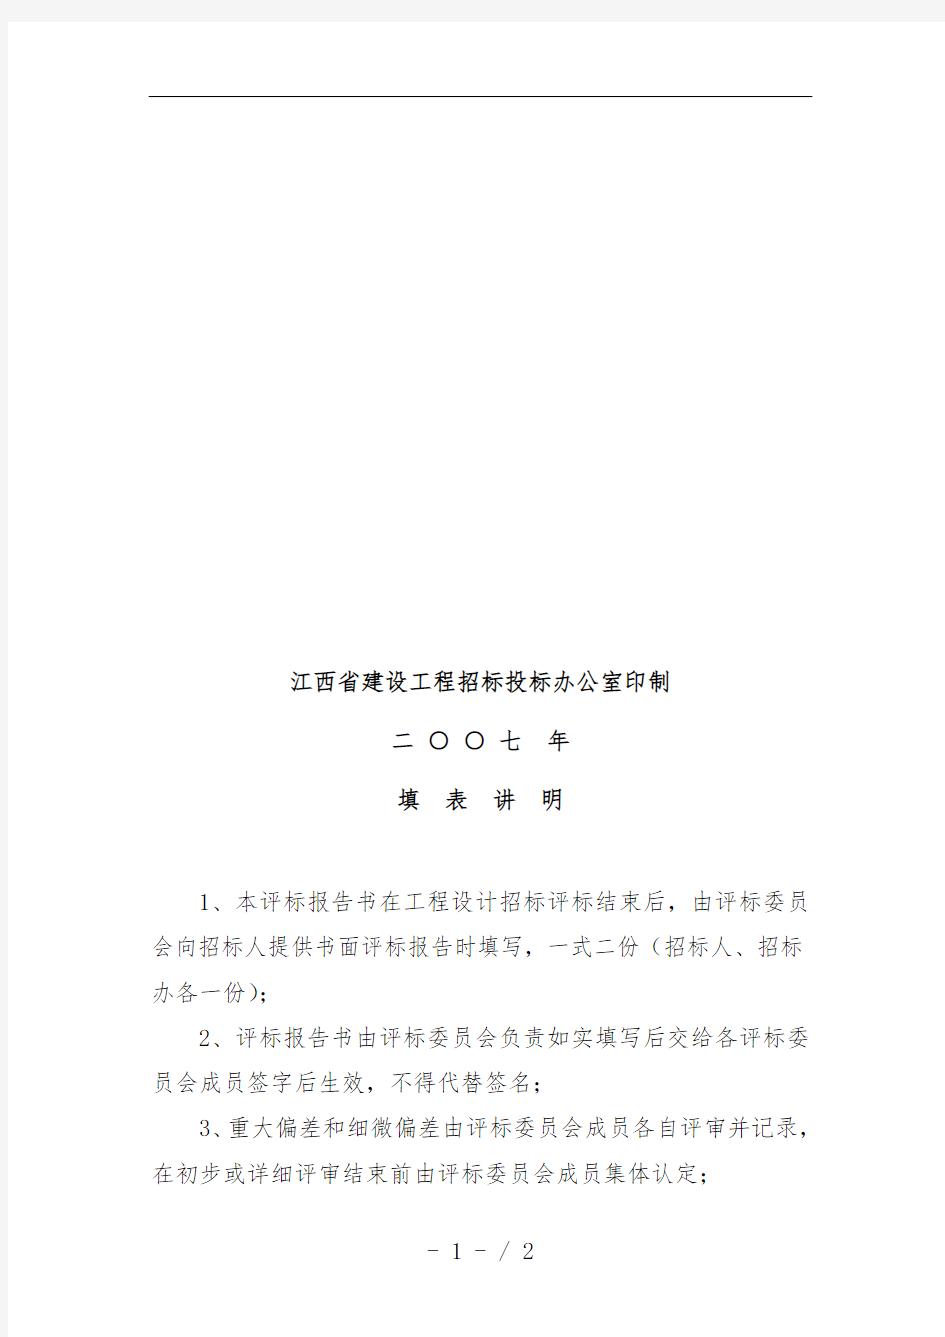 江西省基础设工程项目设计招标评标报告书